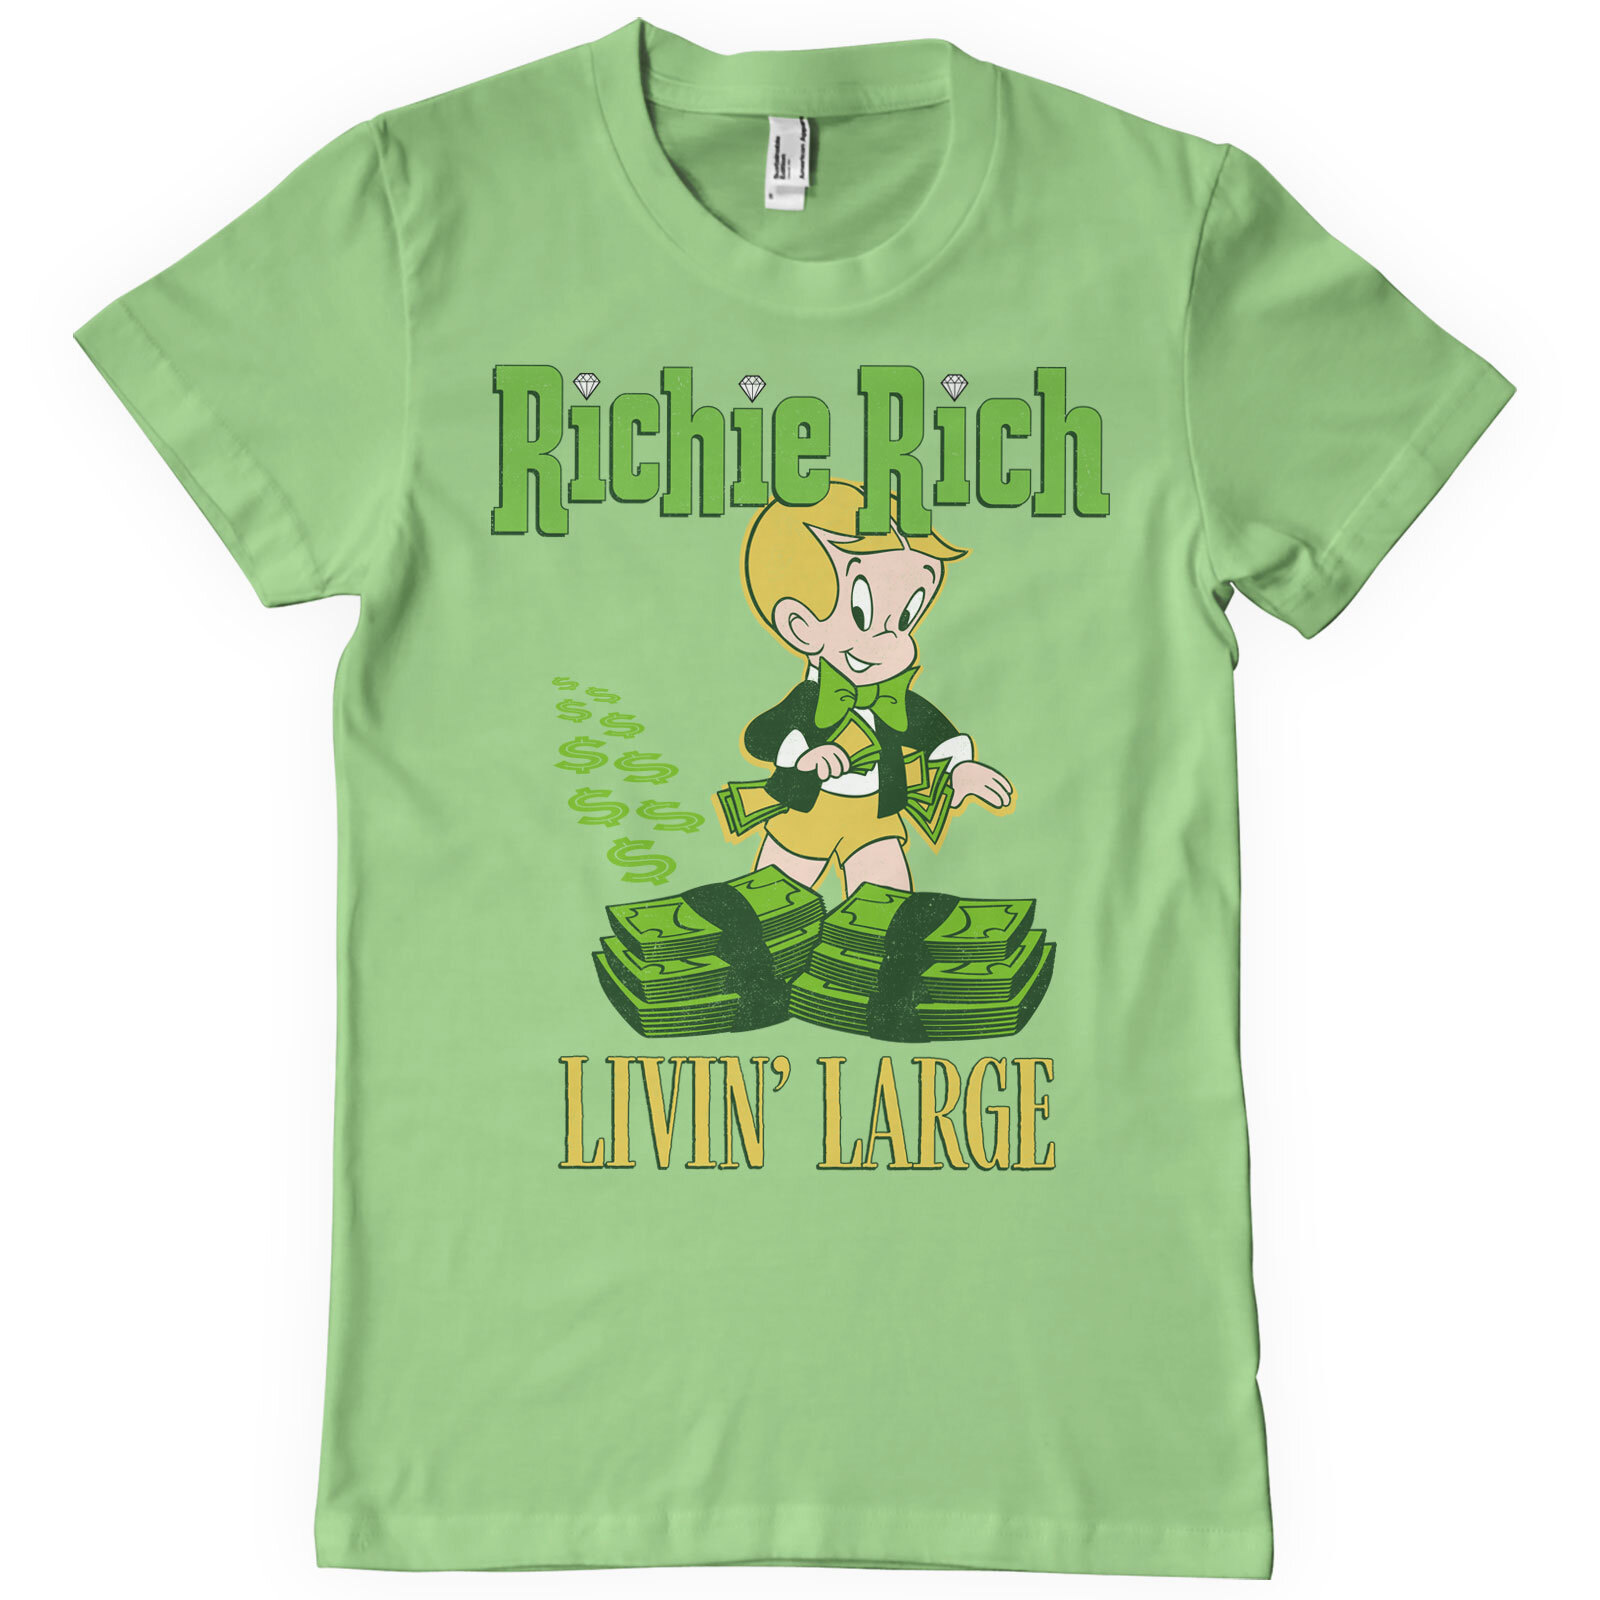 Richie Rich Livin' Large T-Shirt